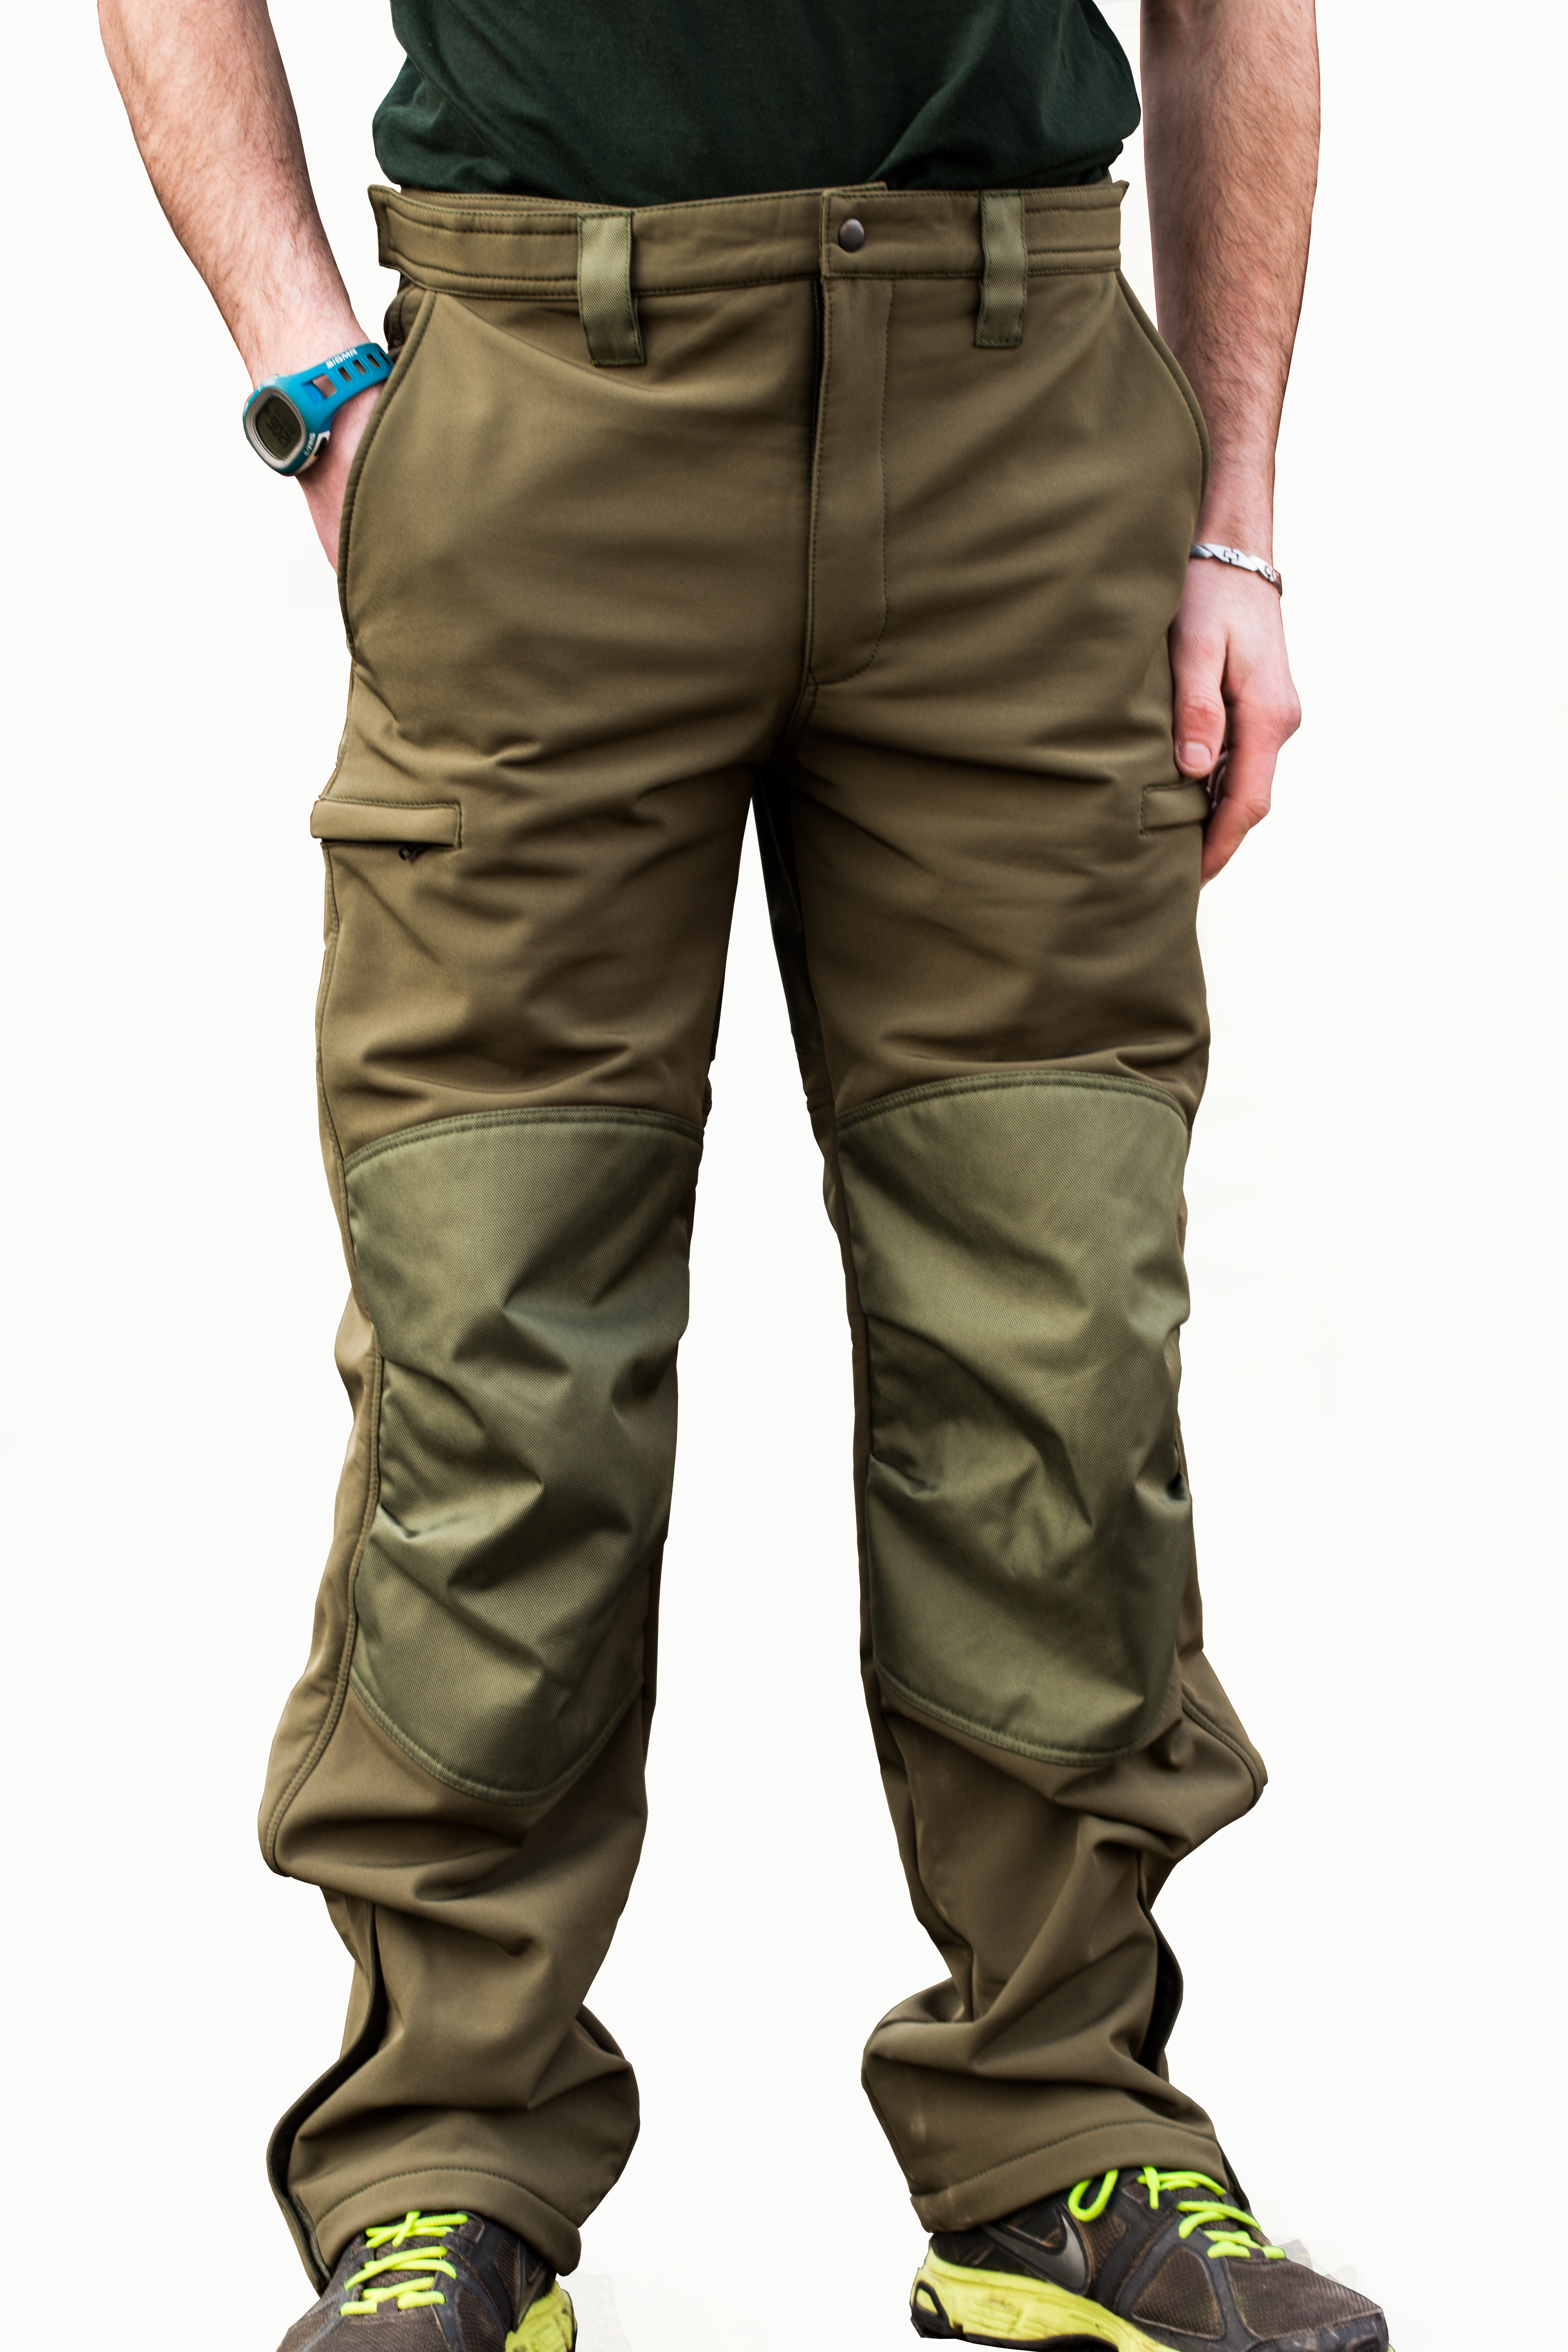 Mikbaits oblečení - Nepromokavé funkční kalhoty Mikbaits STR zelené M